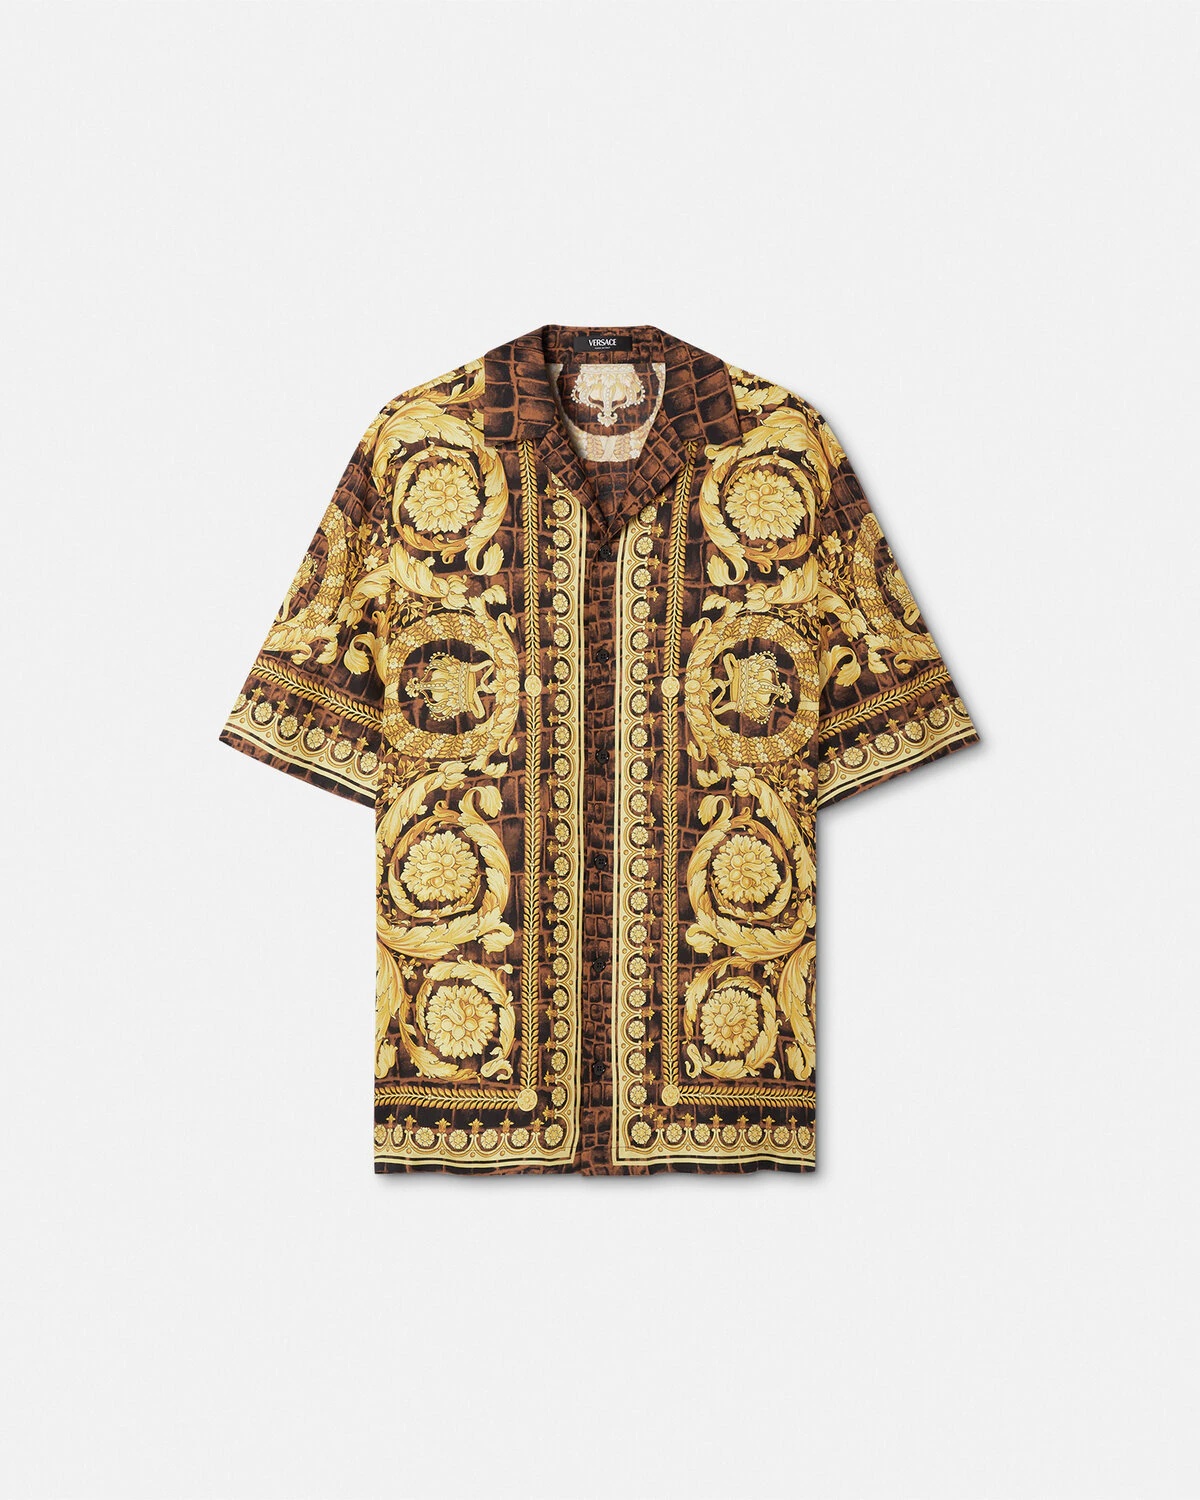 Baroccodile Silk Shirt - 1